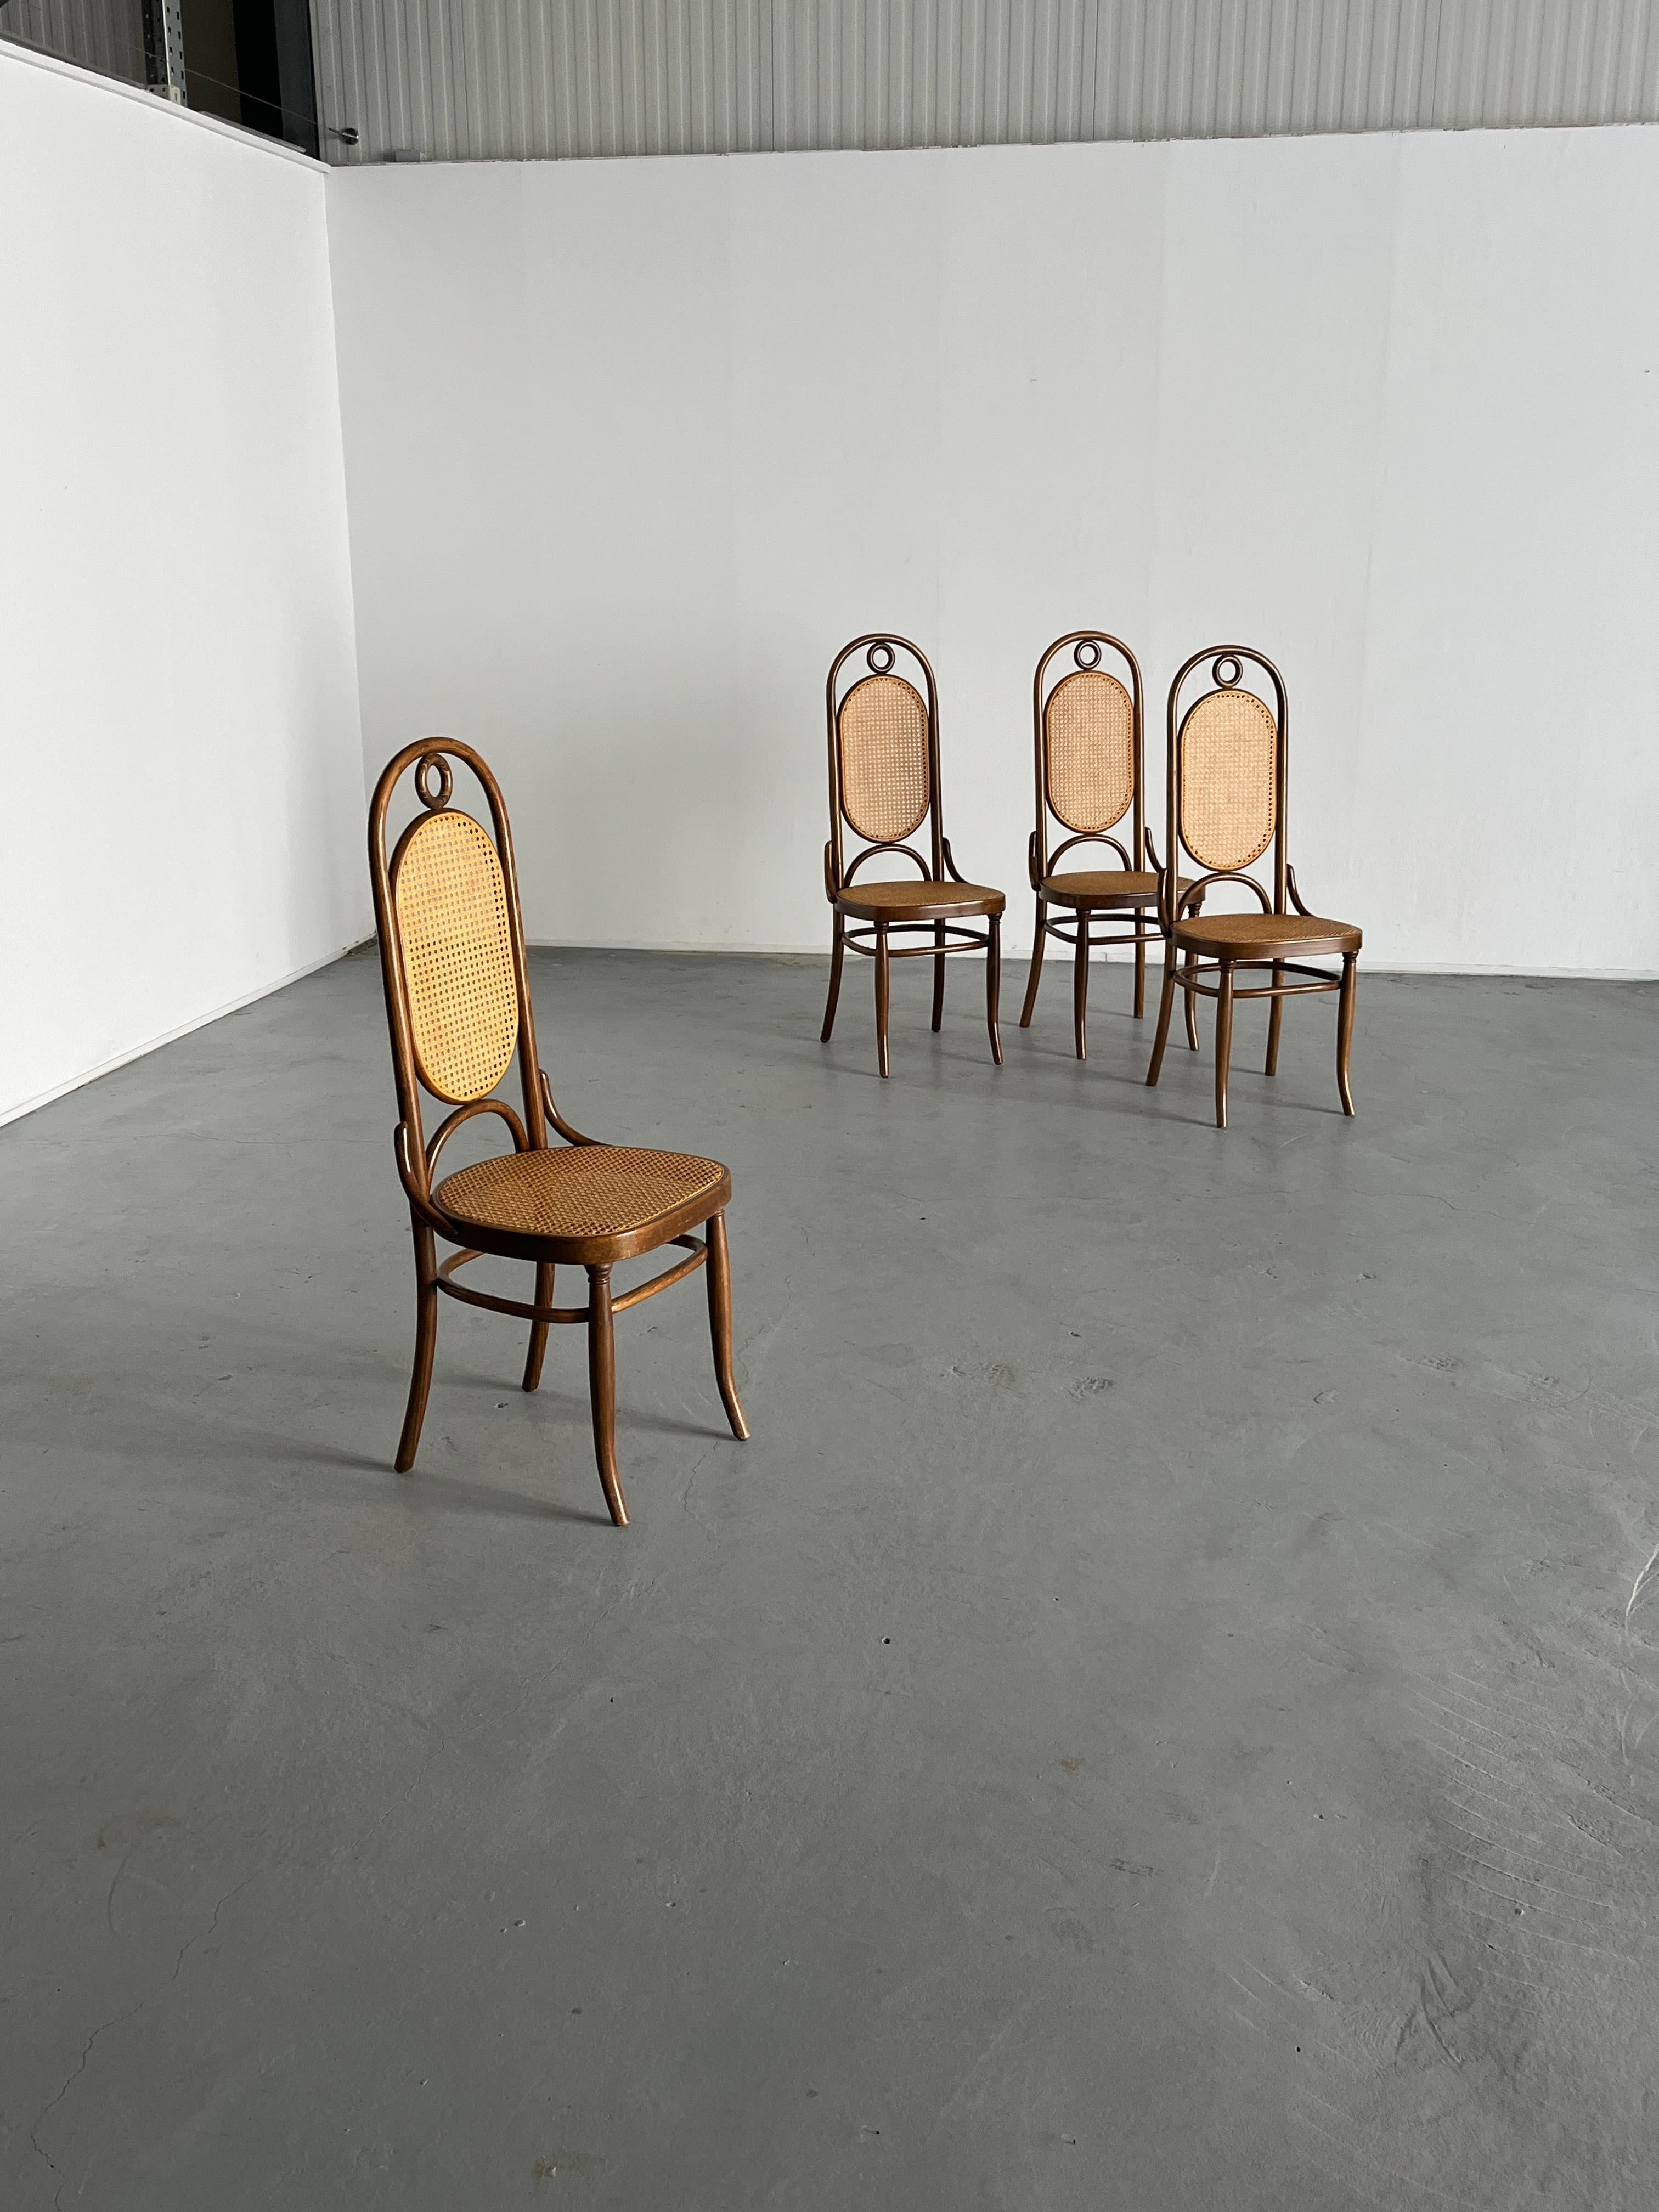 Un ensemble de quatre belles chaises en bois courbé Thonet, dossier haut populaire connu comme le modèle 207R ou le modèle no. 17.
Non étiqueté, très probablement une production Thonet-Mundus de la fin des années 1970.

Dans l'ensemble en très bon